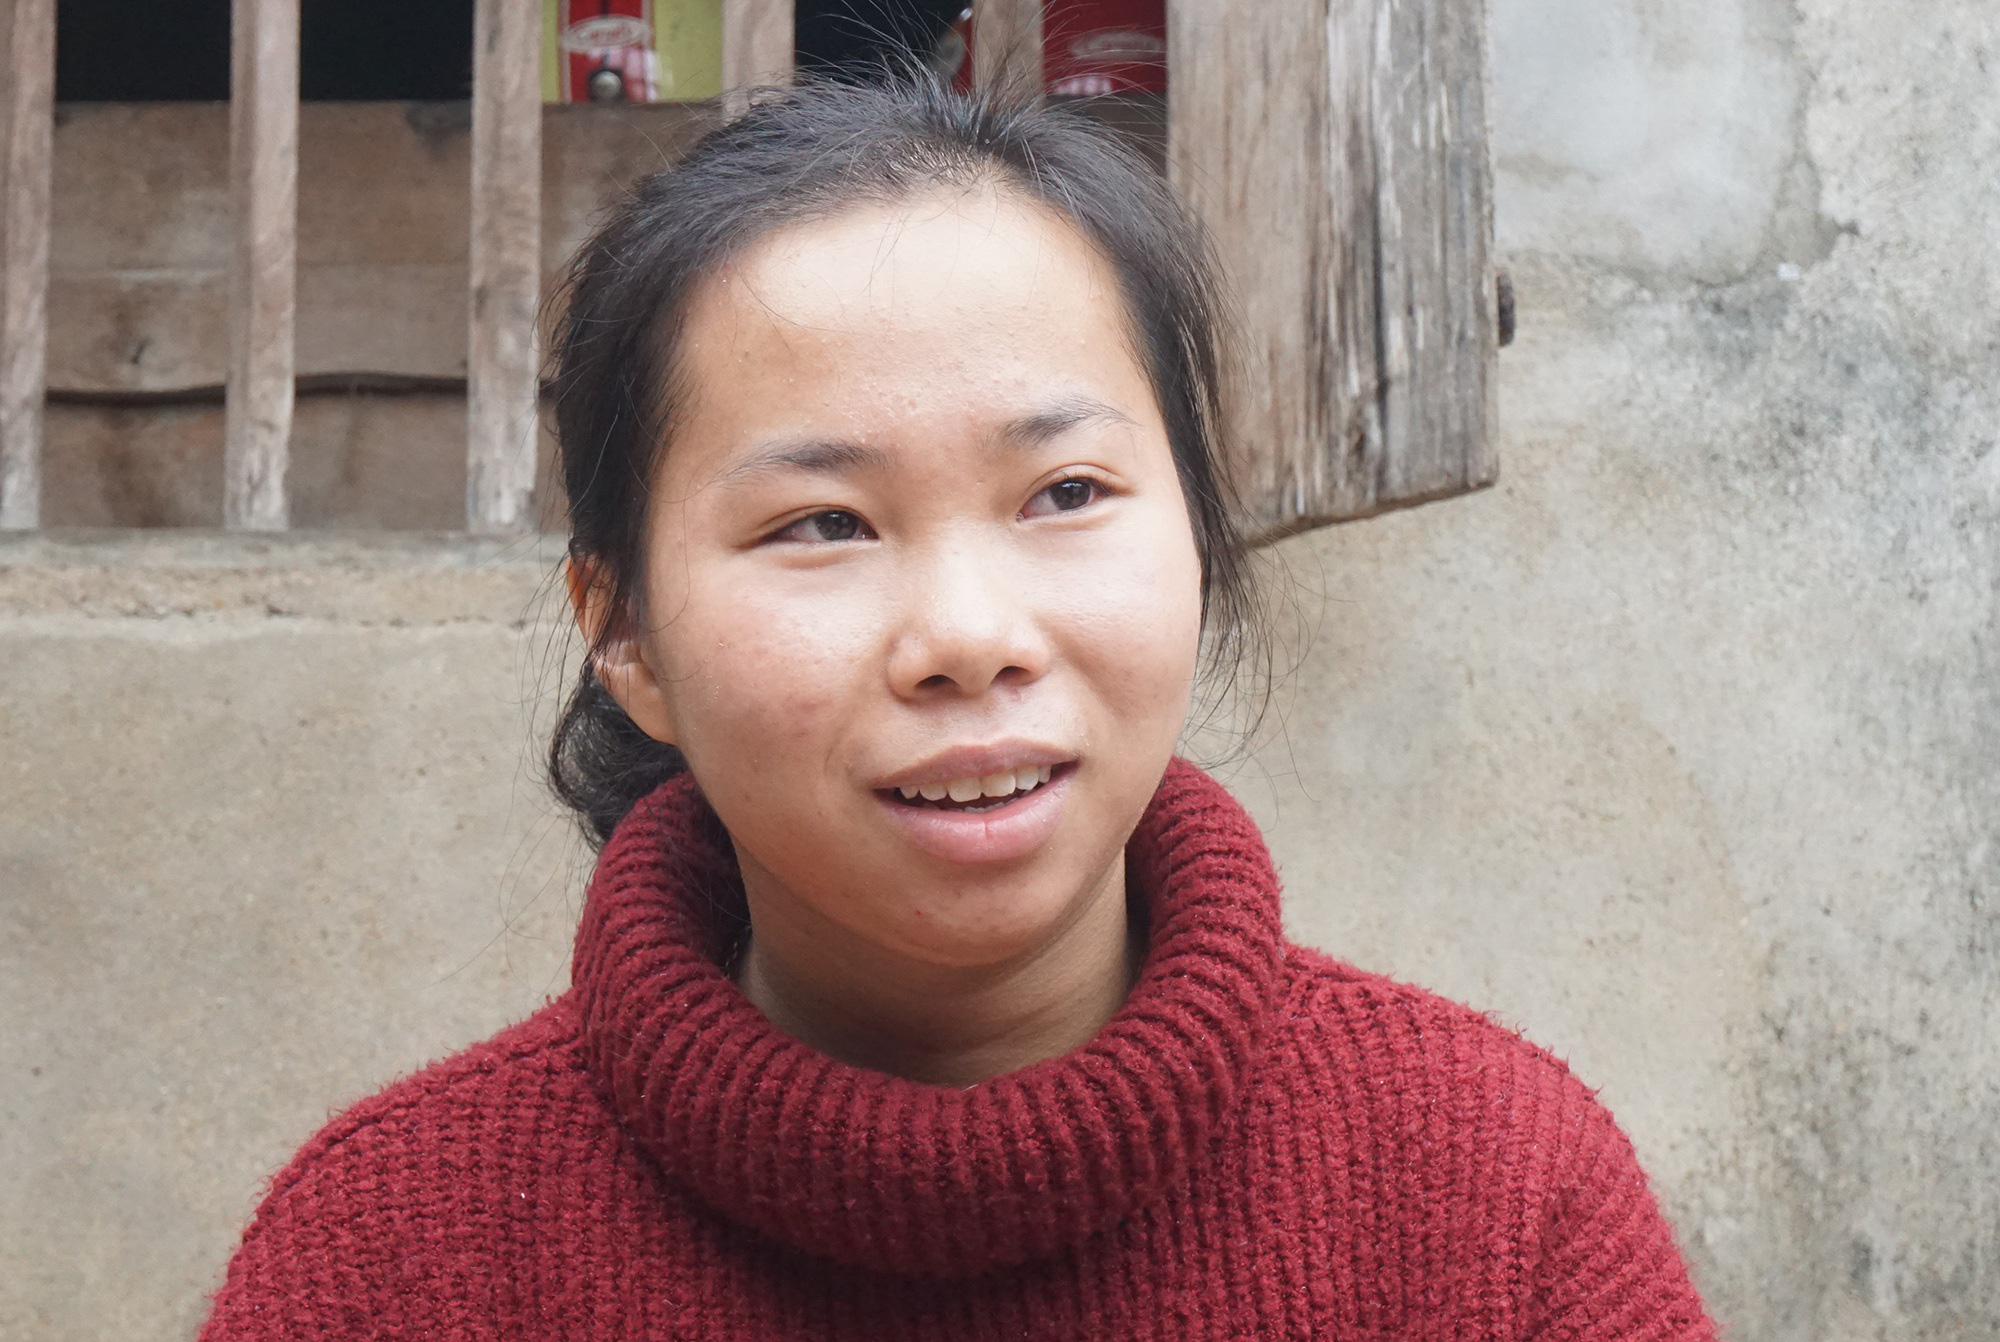 Cô bé xứ Nghệ sinh ra chỉ nặng 9 lạng giành học bổng 1 tỷ đồng - Ảnh 1.